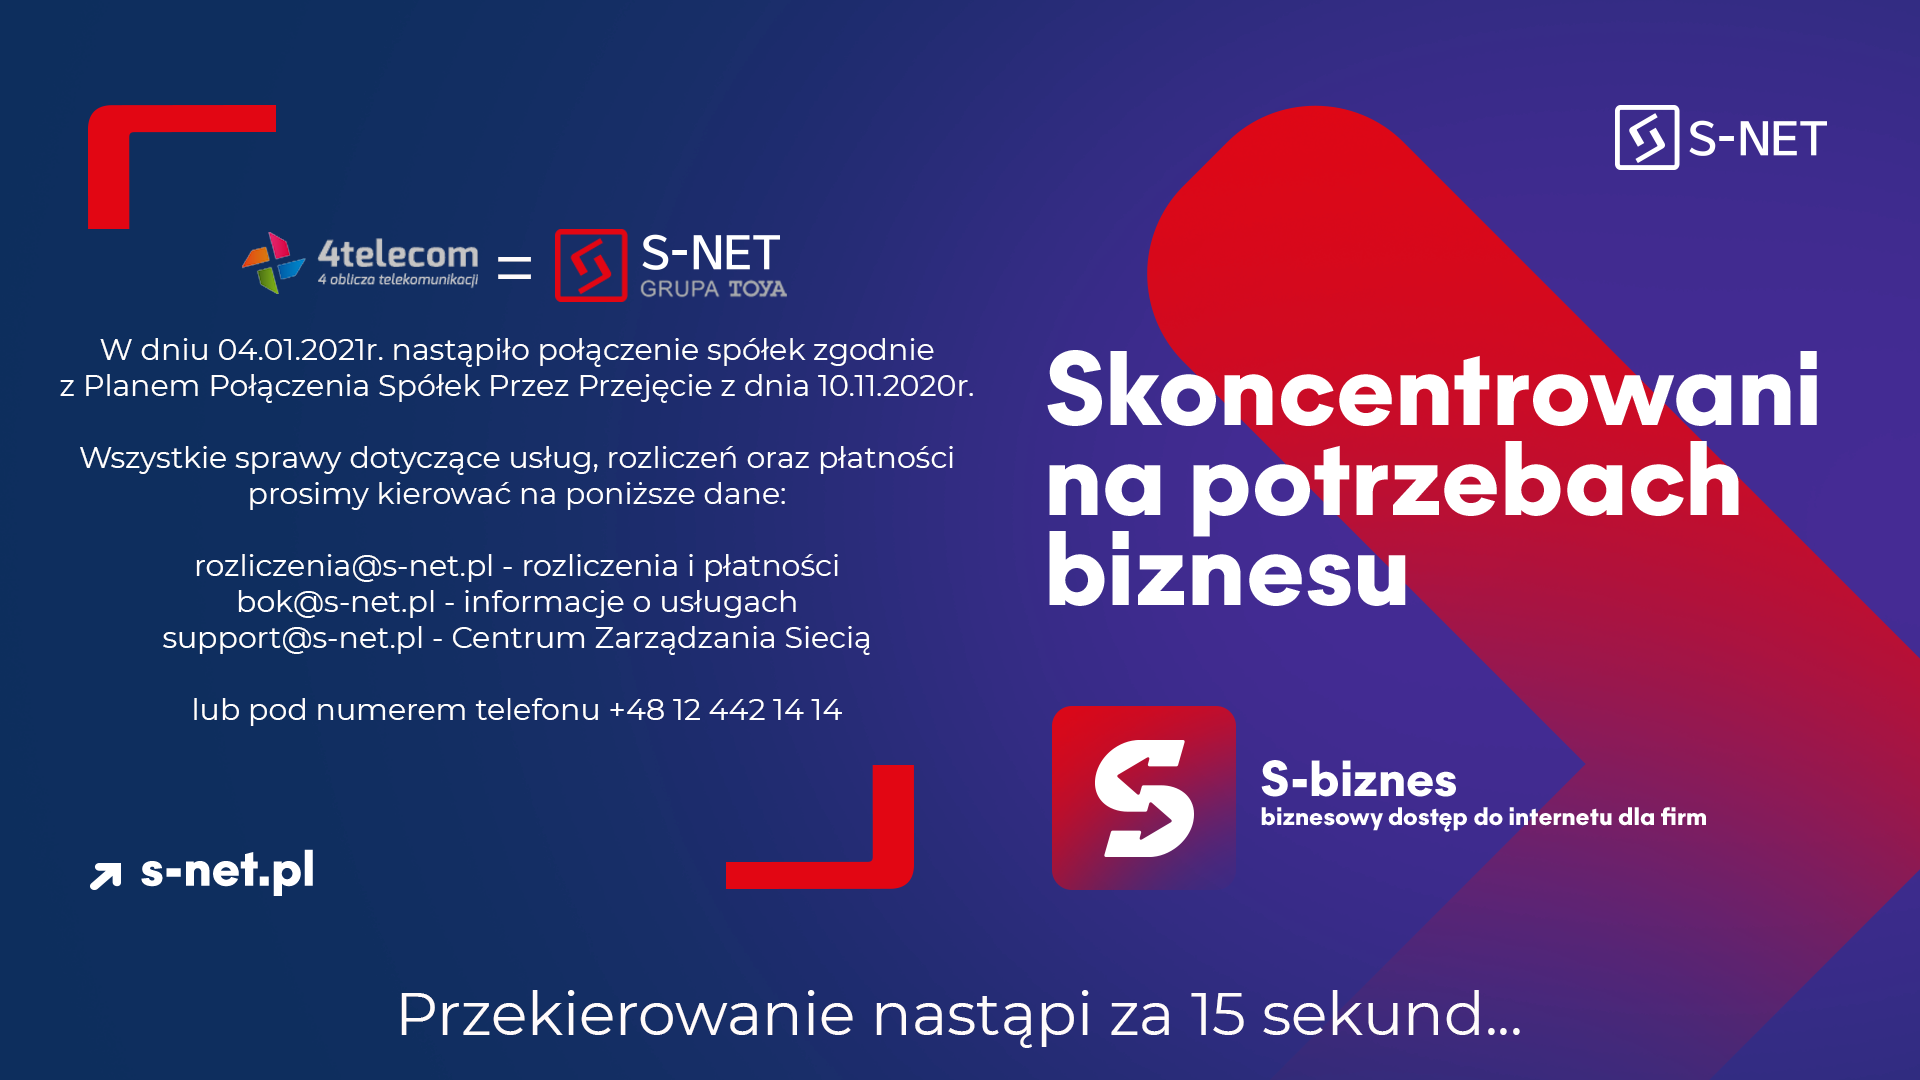 4Telecom-S-NET